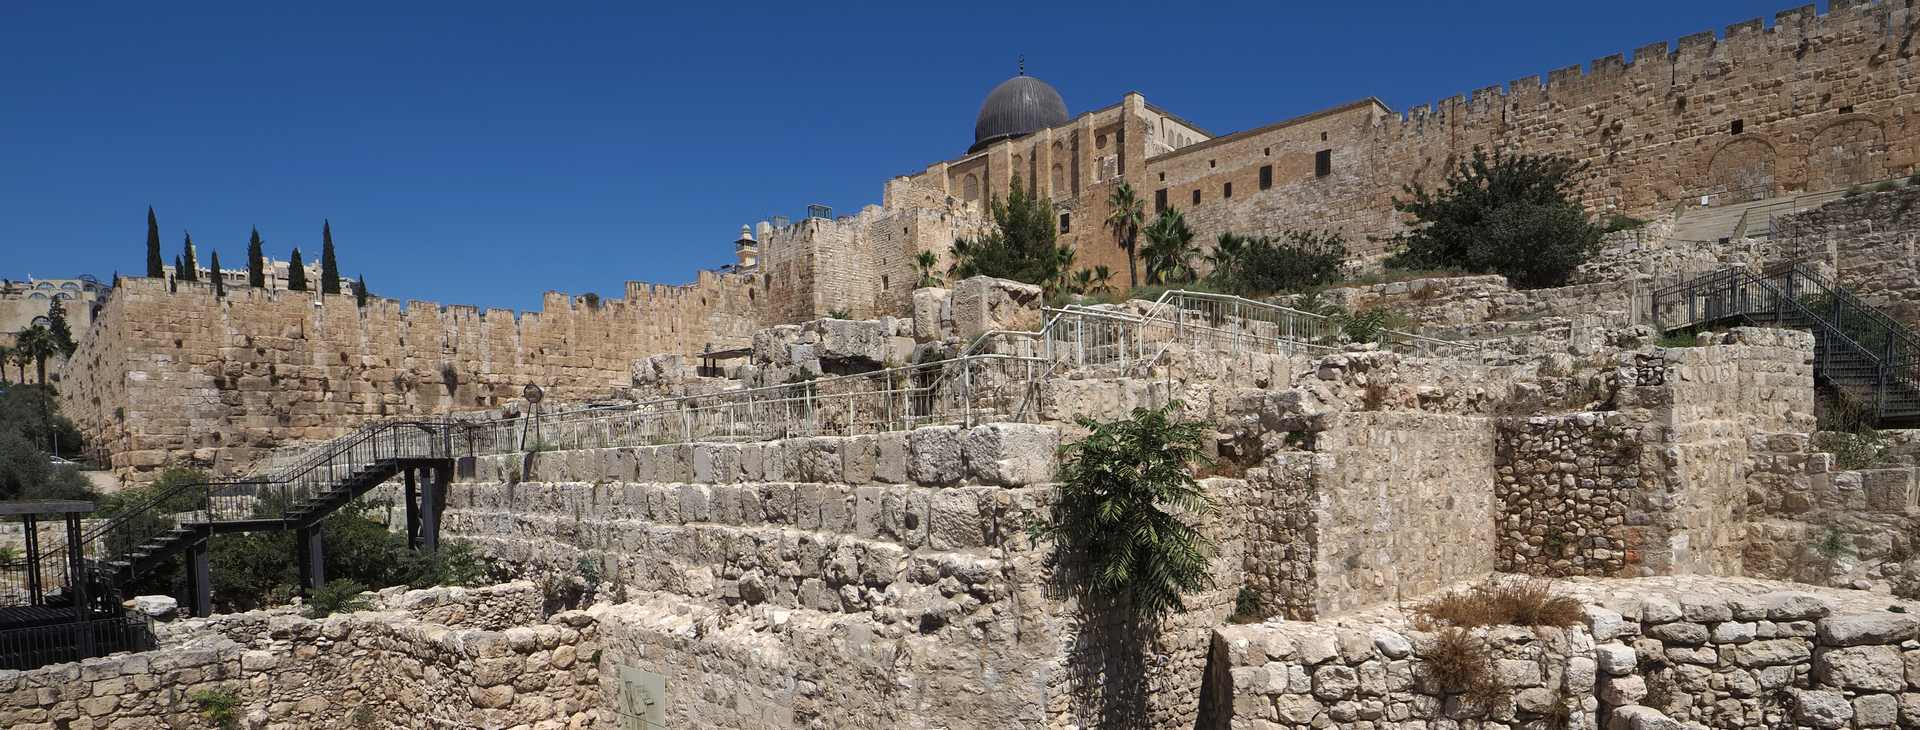 הגן הארכיאולוגי ירושלים - מרכז דוידסון